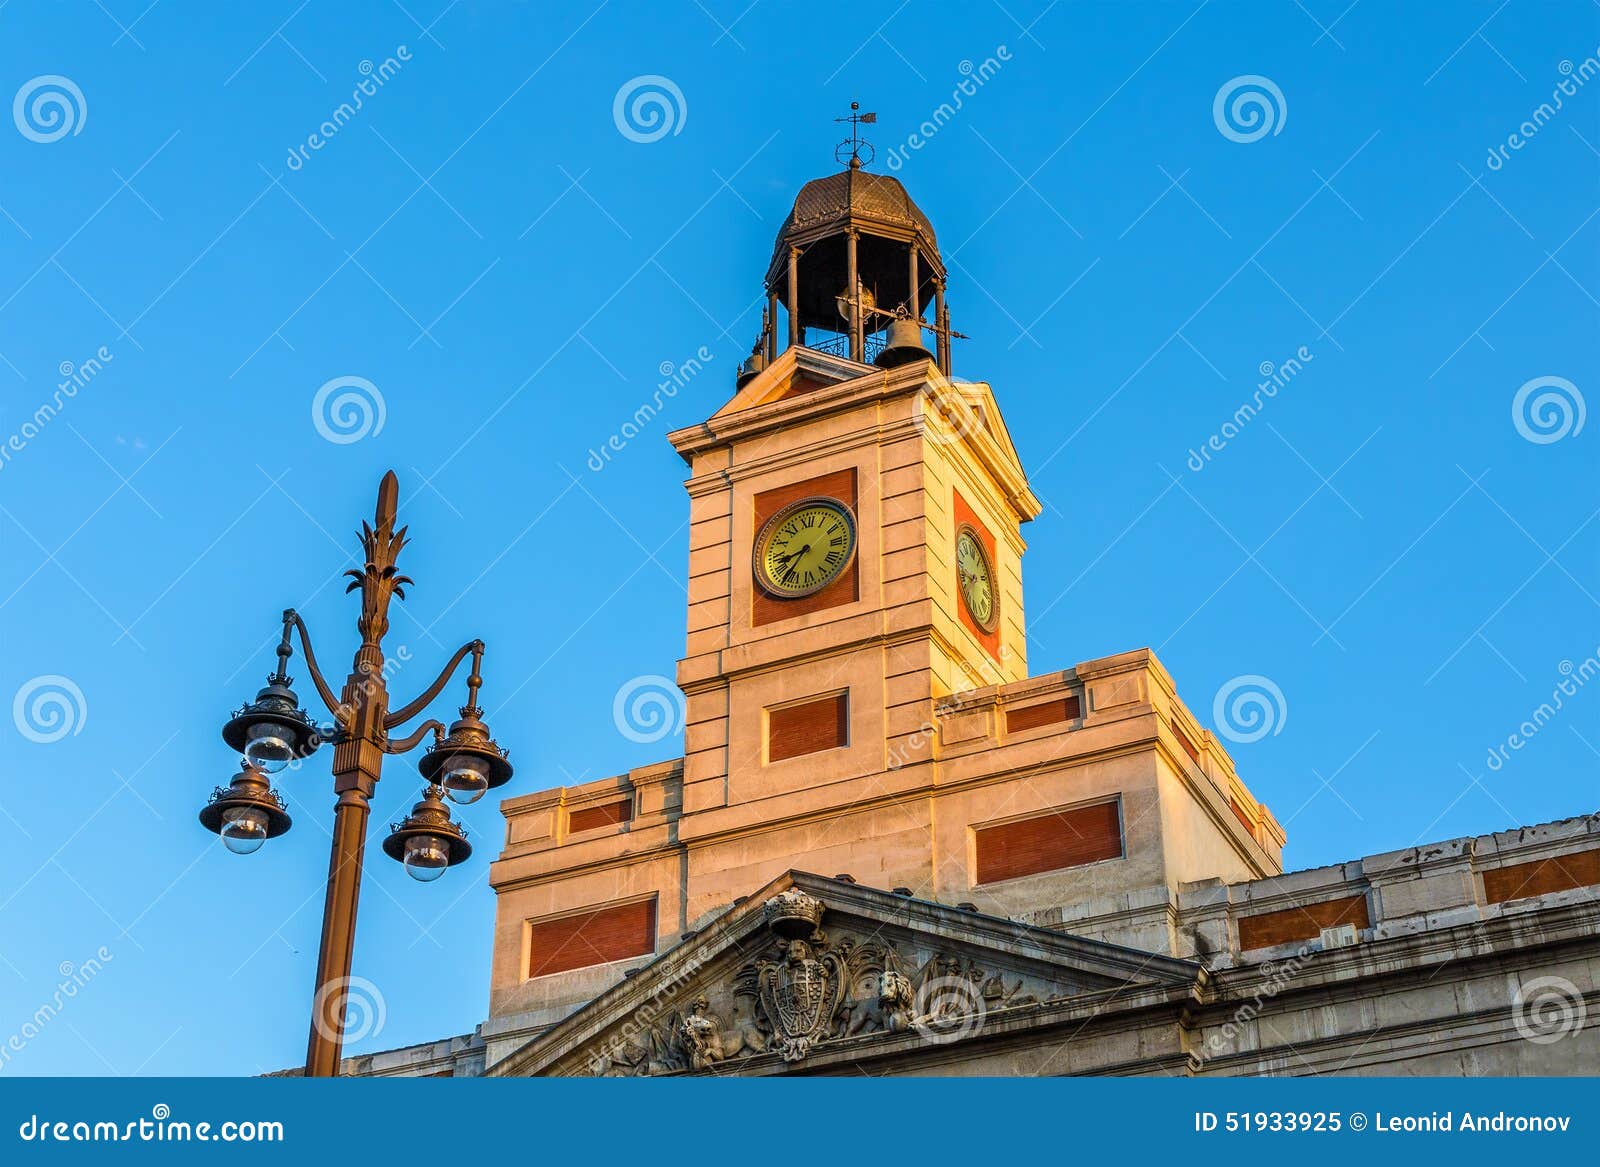 the clock of the real casa de correos